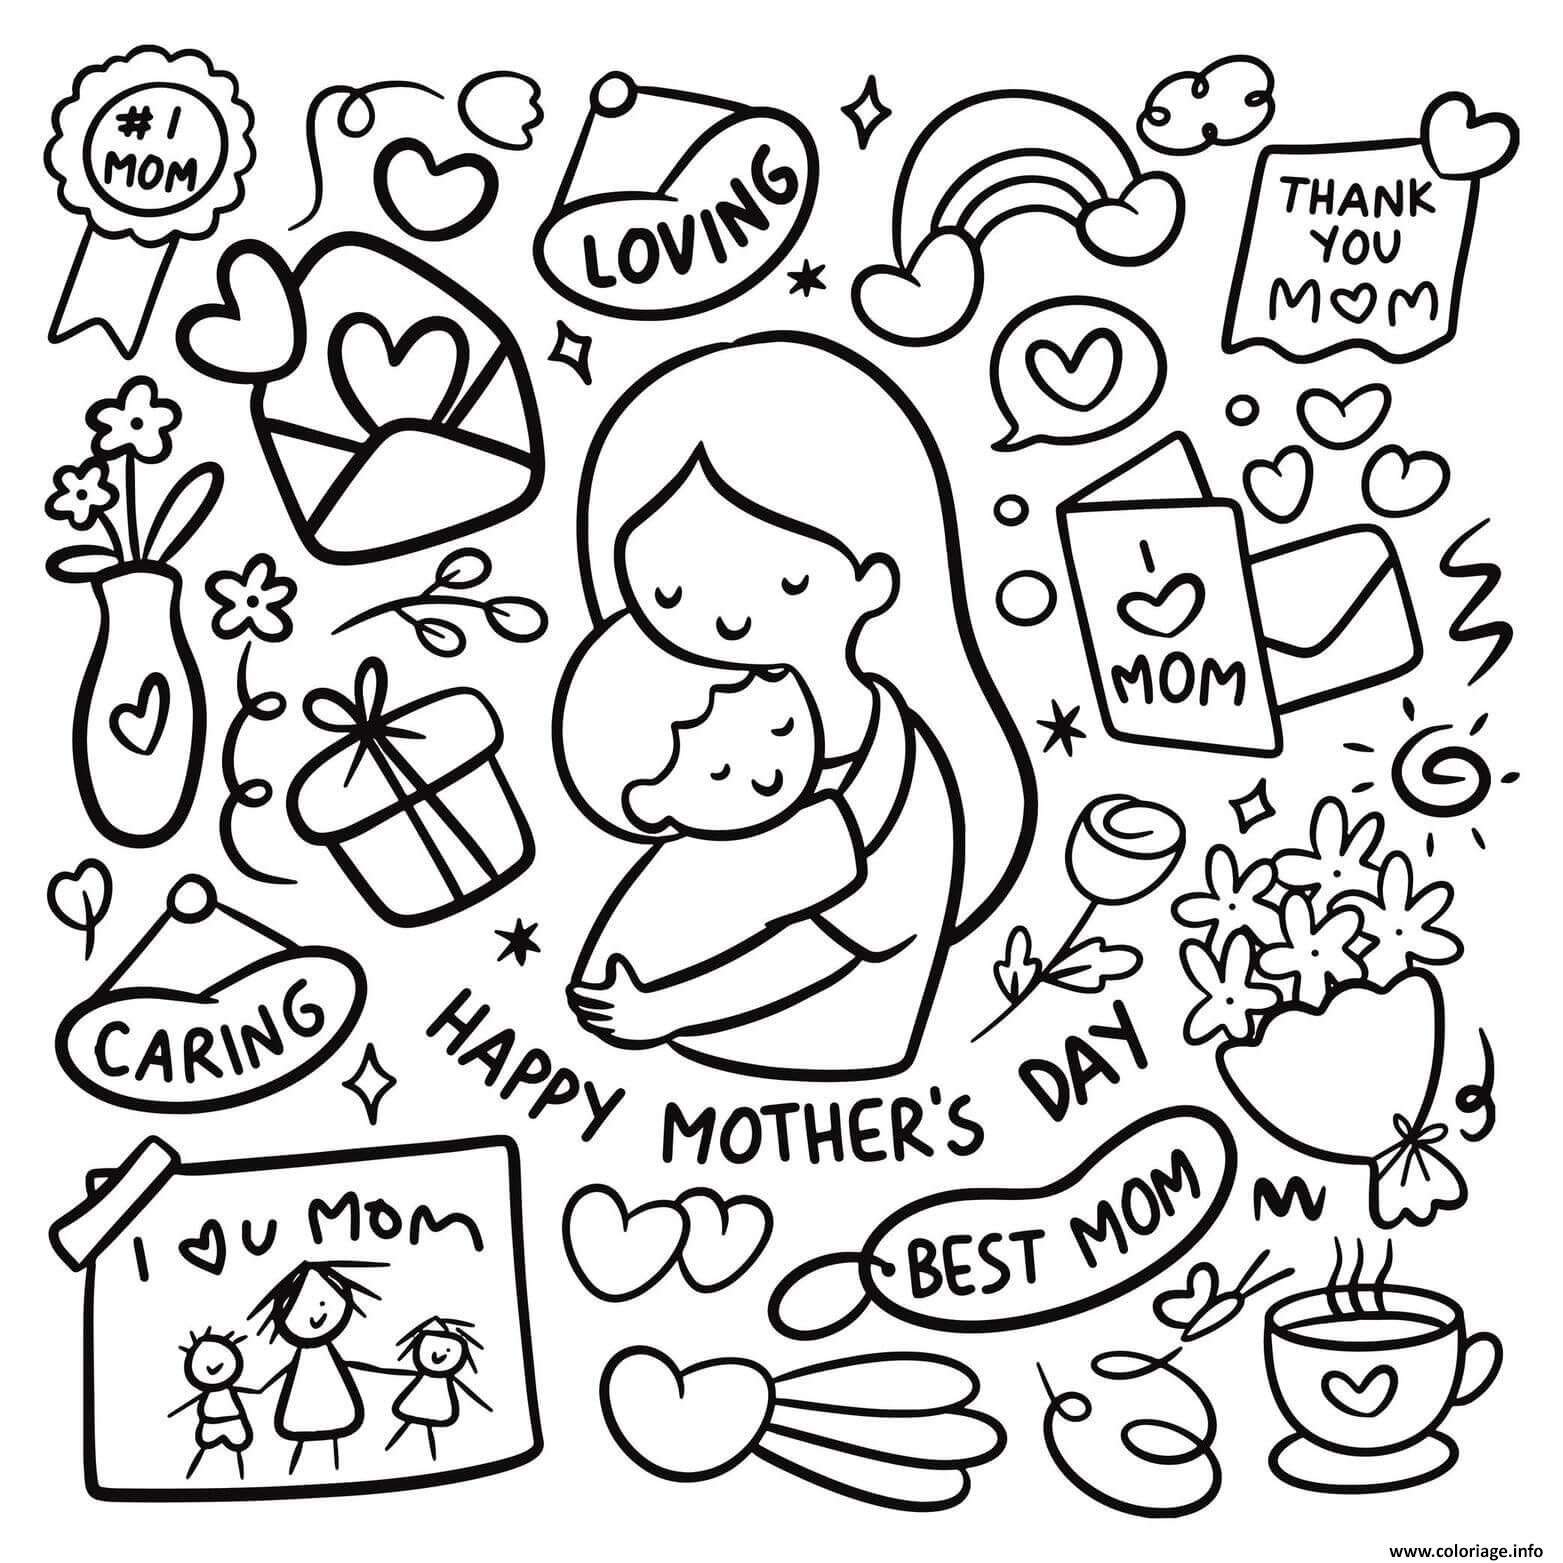 Dessin fete des meres mothers day doodle Coloriage Gratuit à Imprimer